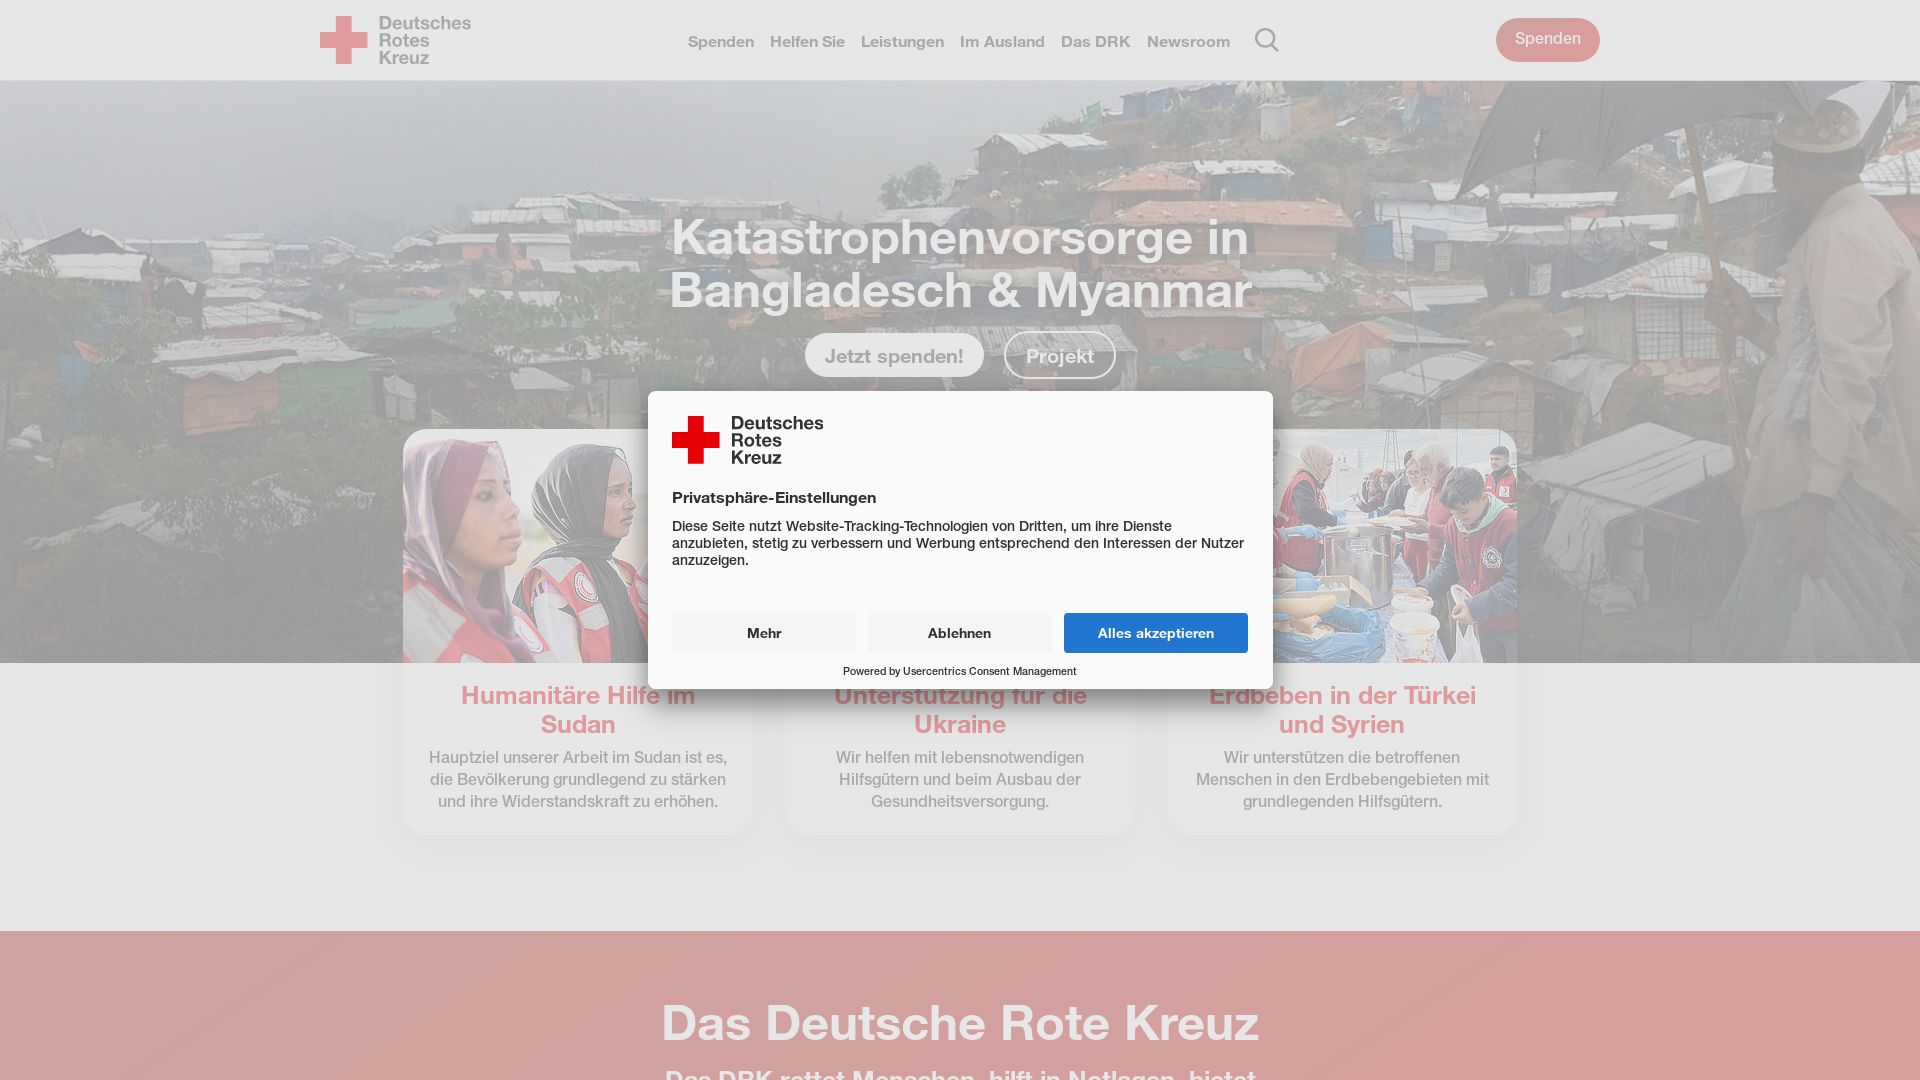 Website status drk.de is   ONLINE